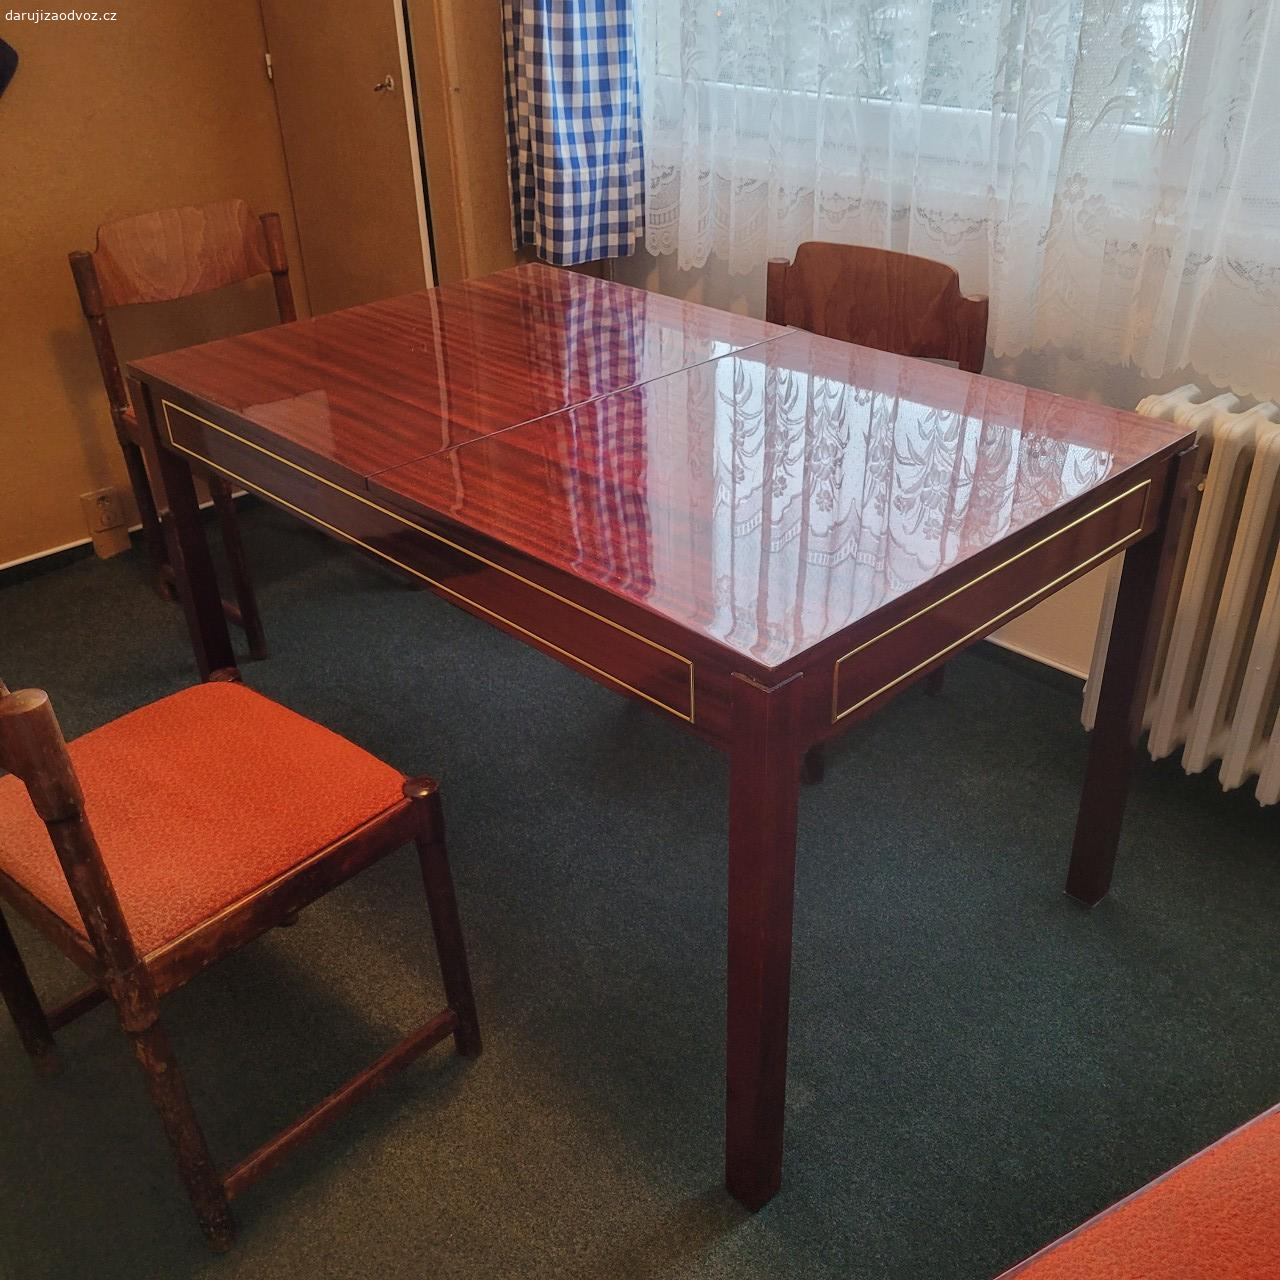 Daruji rozkládací jídelní stůl. Daruji dřevěný rozkládací jídelní stůl se 6 židlemi. Rozměry: šířka 130 (170) cm, hloubka 55, výška 75 cm. Osobní odběr v Ústí nad Labem.